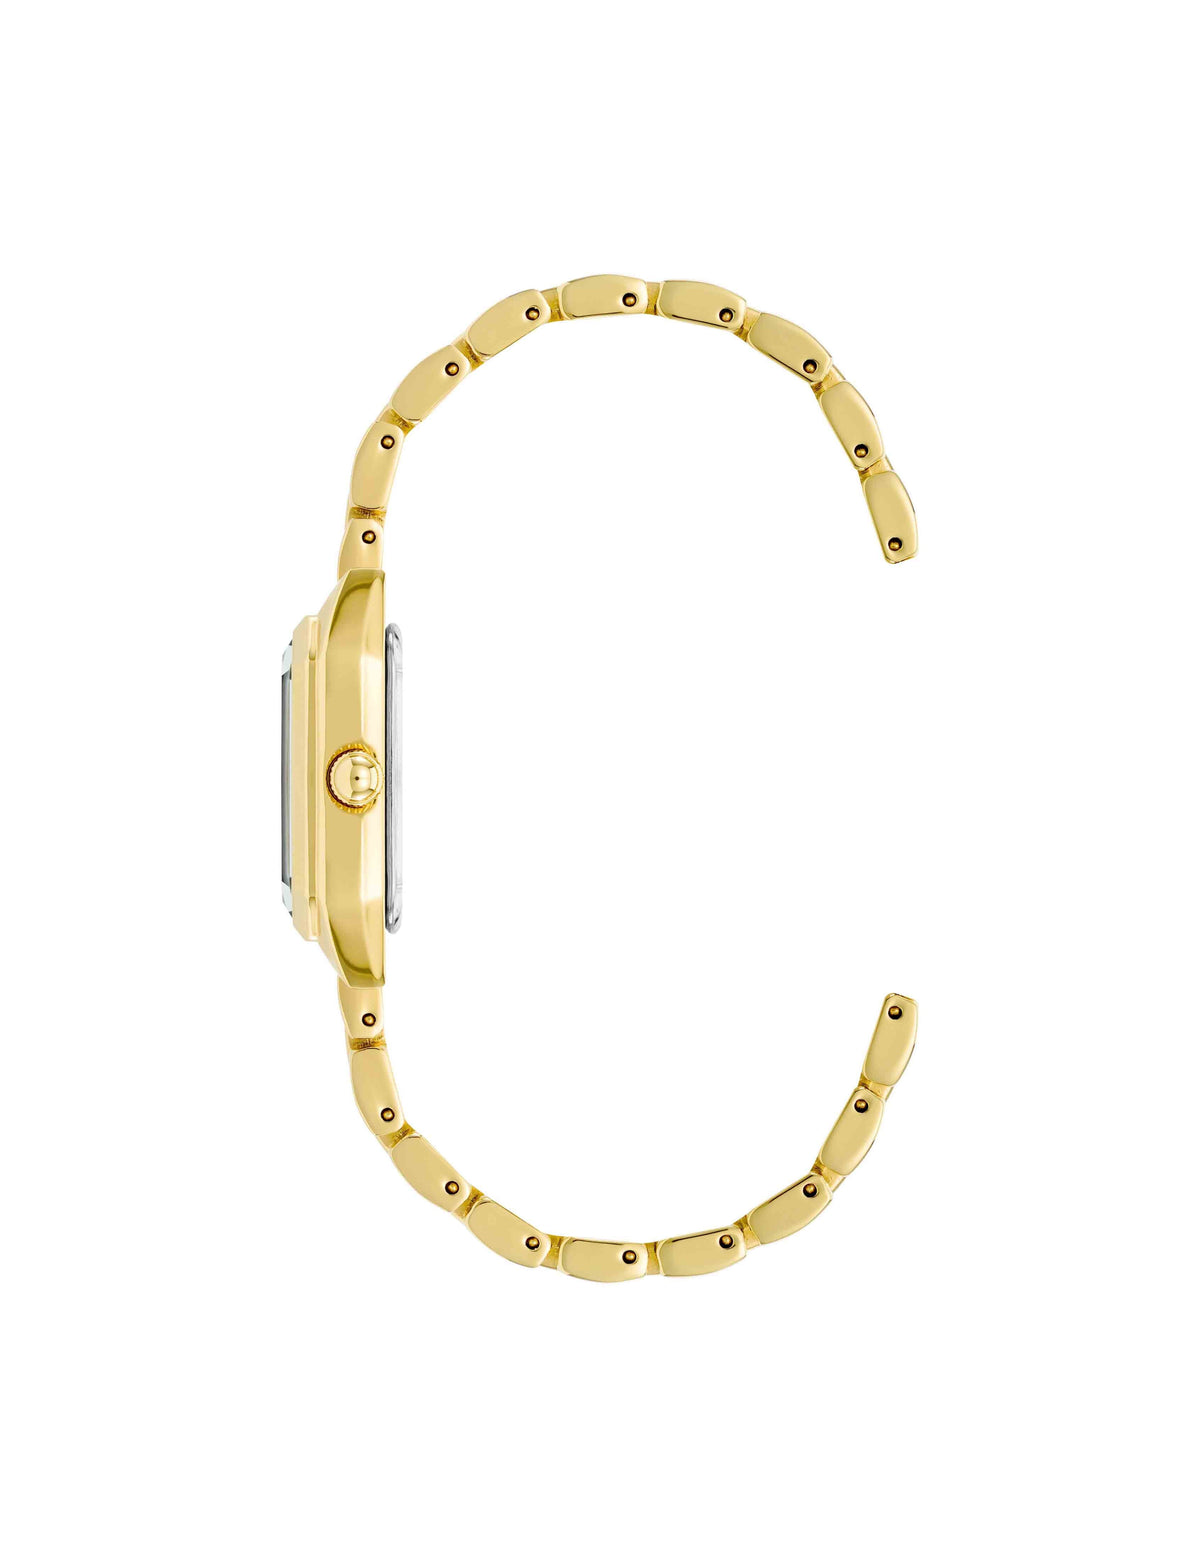 Anne Klein  Octagonal Watch and Bracelet Set